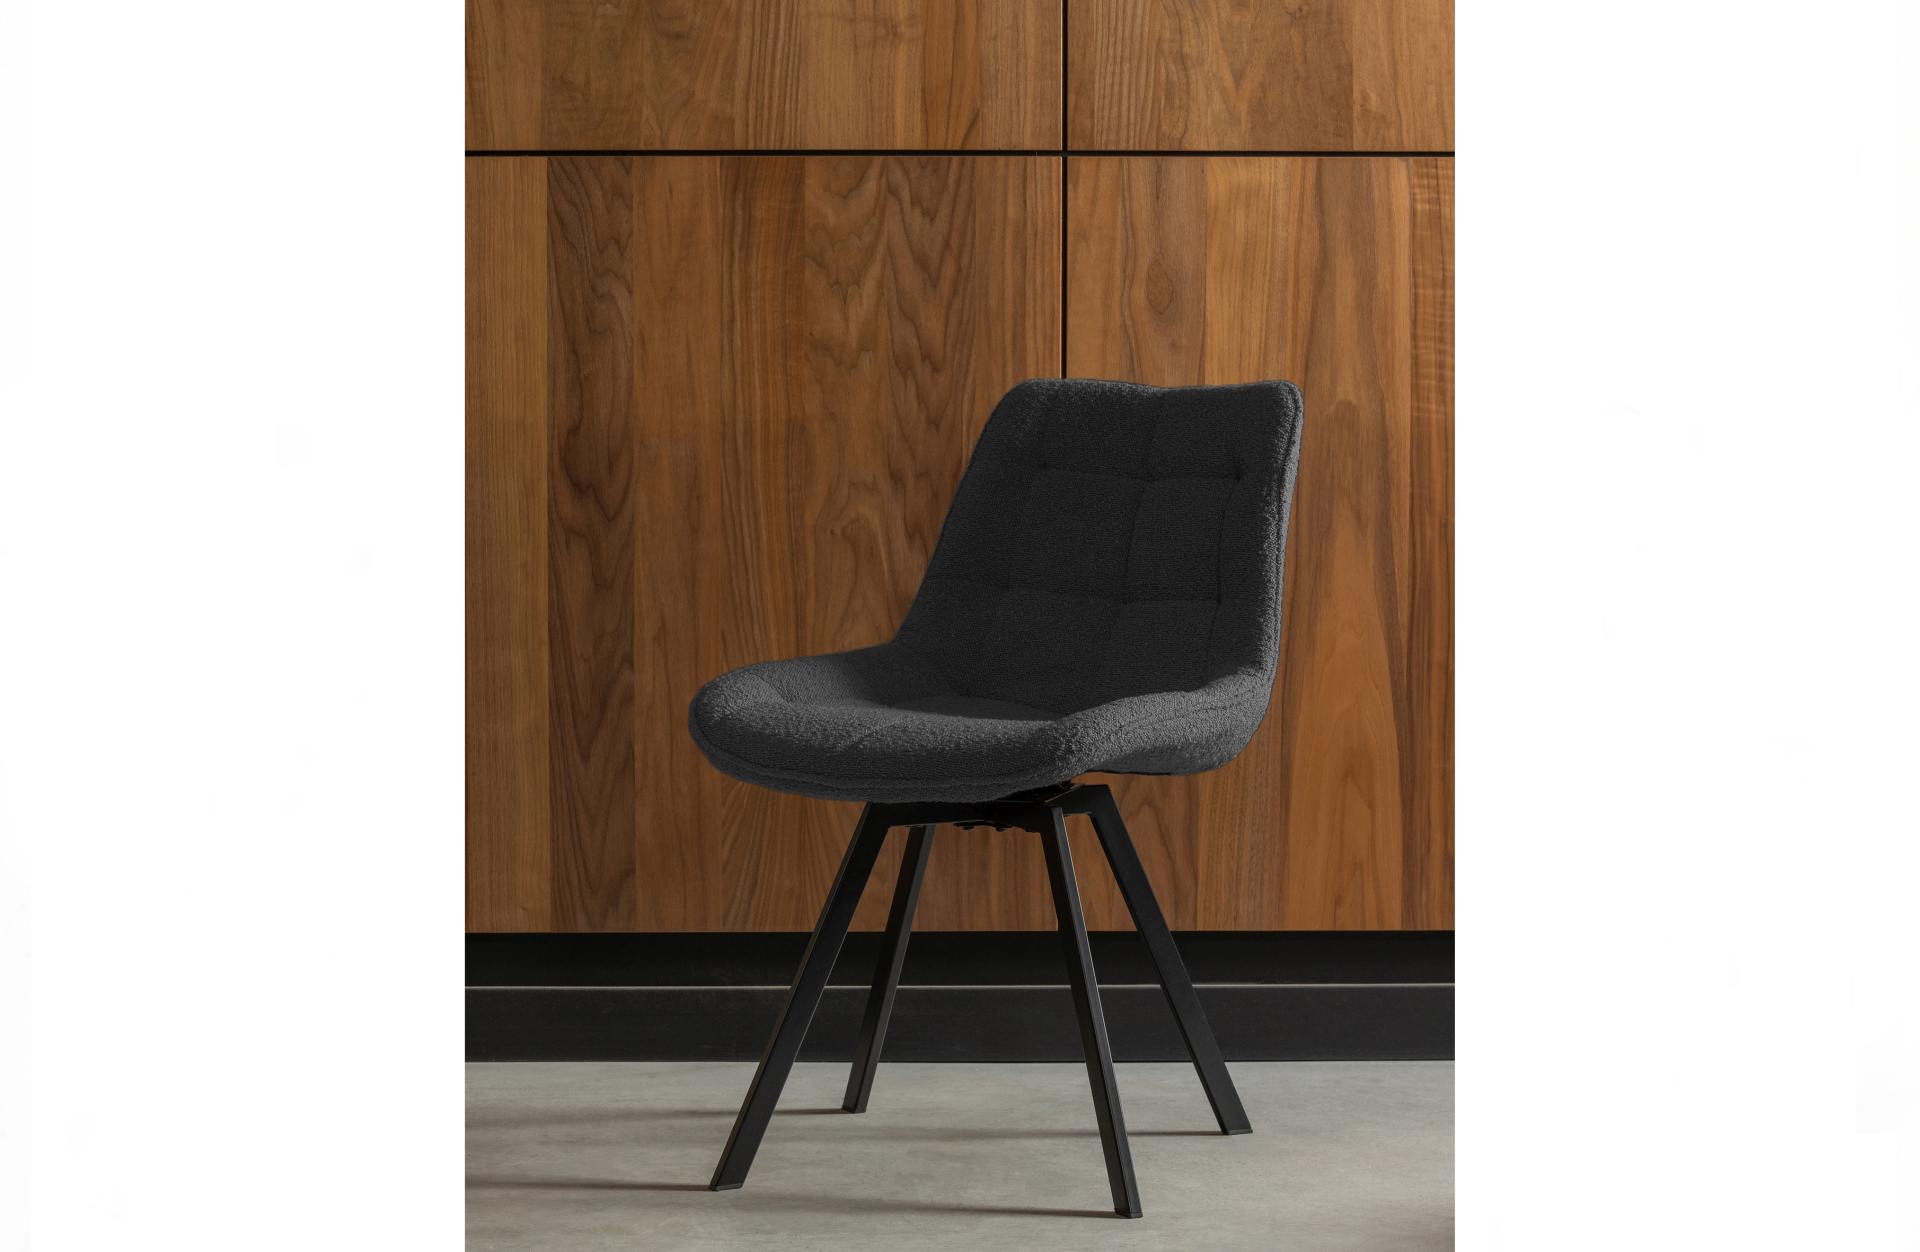 Der Drehstuhl Sutton überzeugt mit seinem klassischen Design. Gefertigt wurde er aus Boucle-Stoff, welcher einen Anthrazit Farbton besitzt. Das Gestell ist aus Metall und hat eine schwarze Farbe. Die Sitzhöhe beträgt 49 cm.